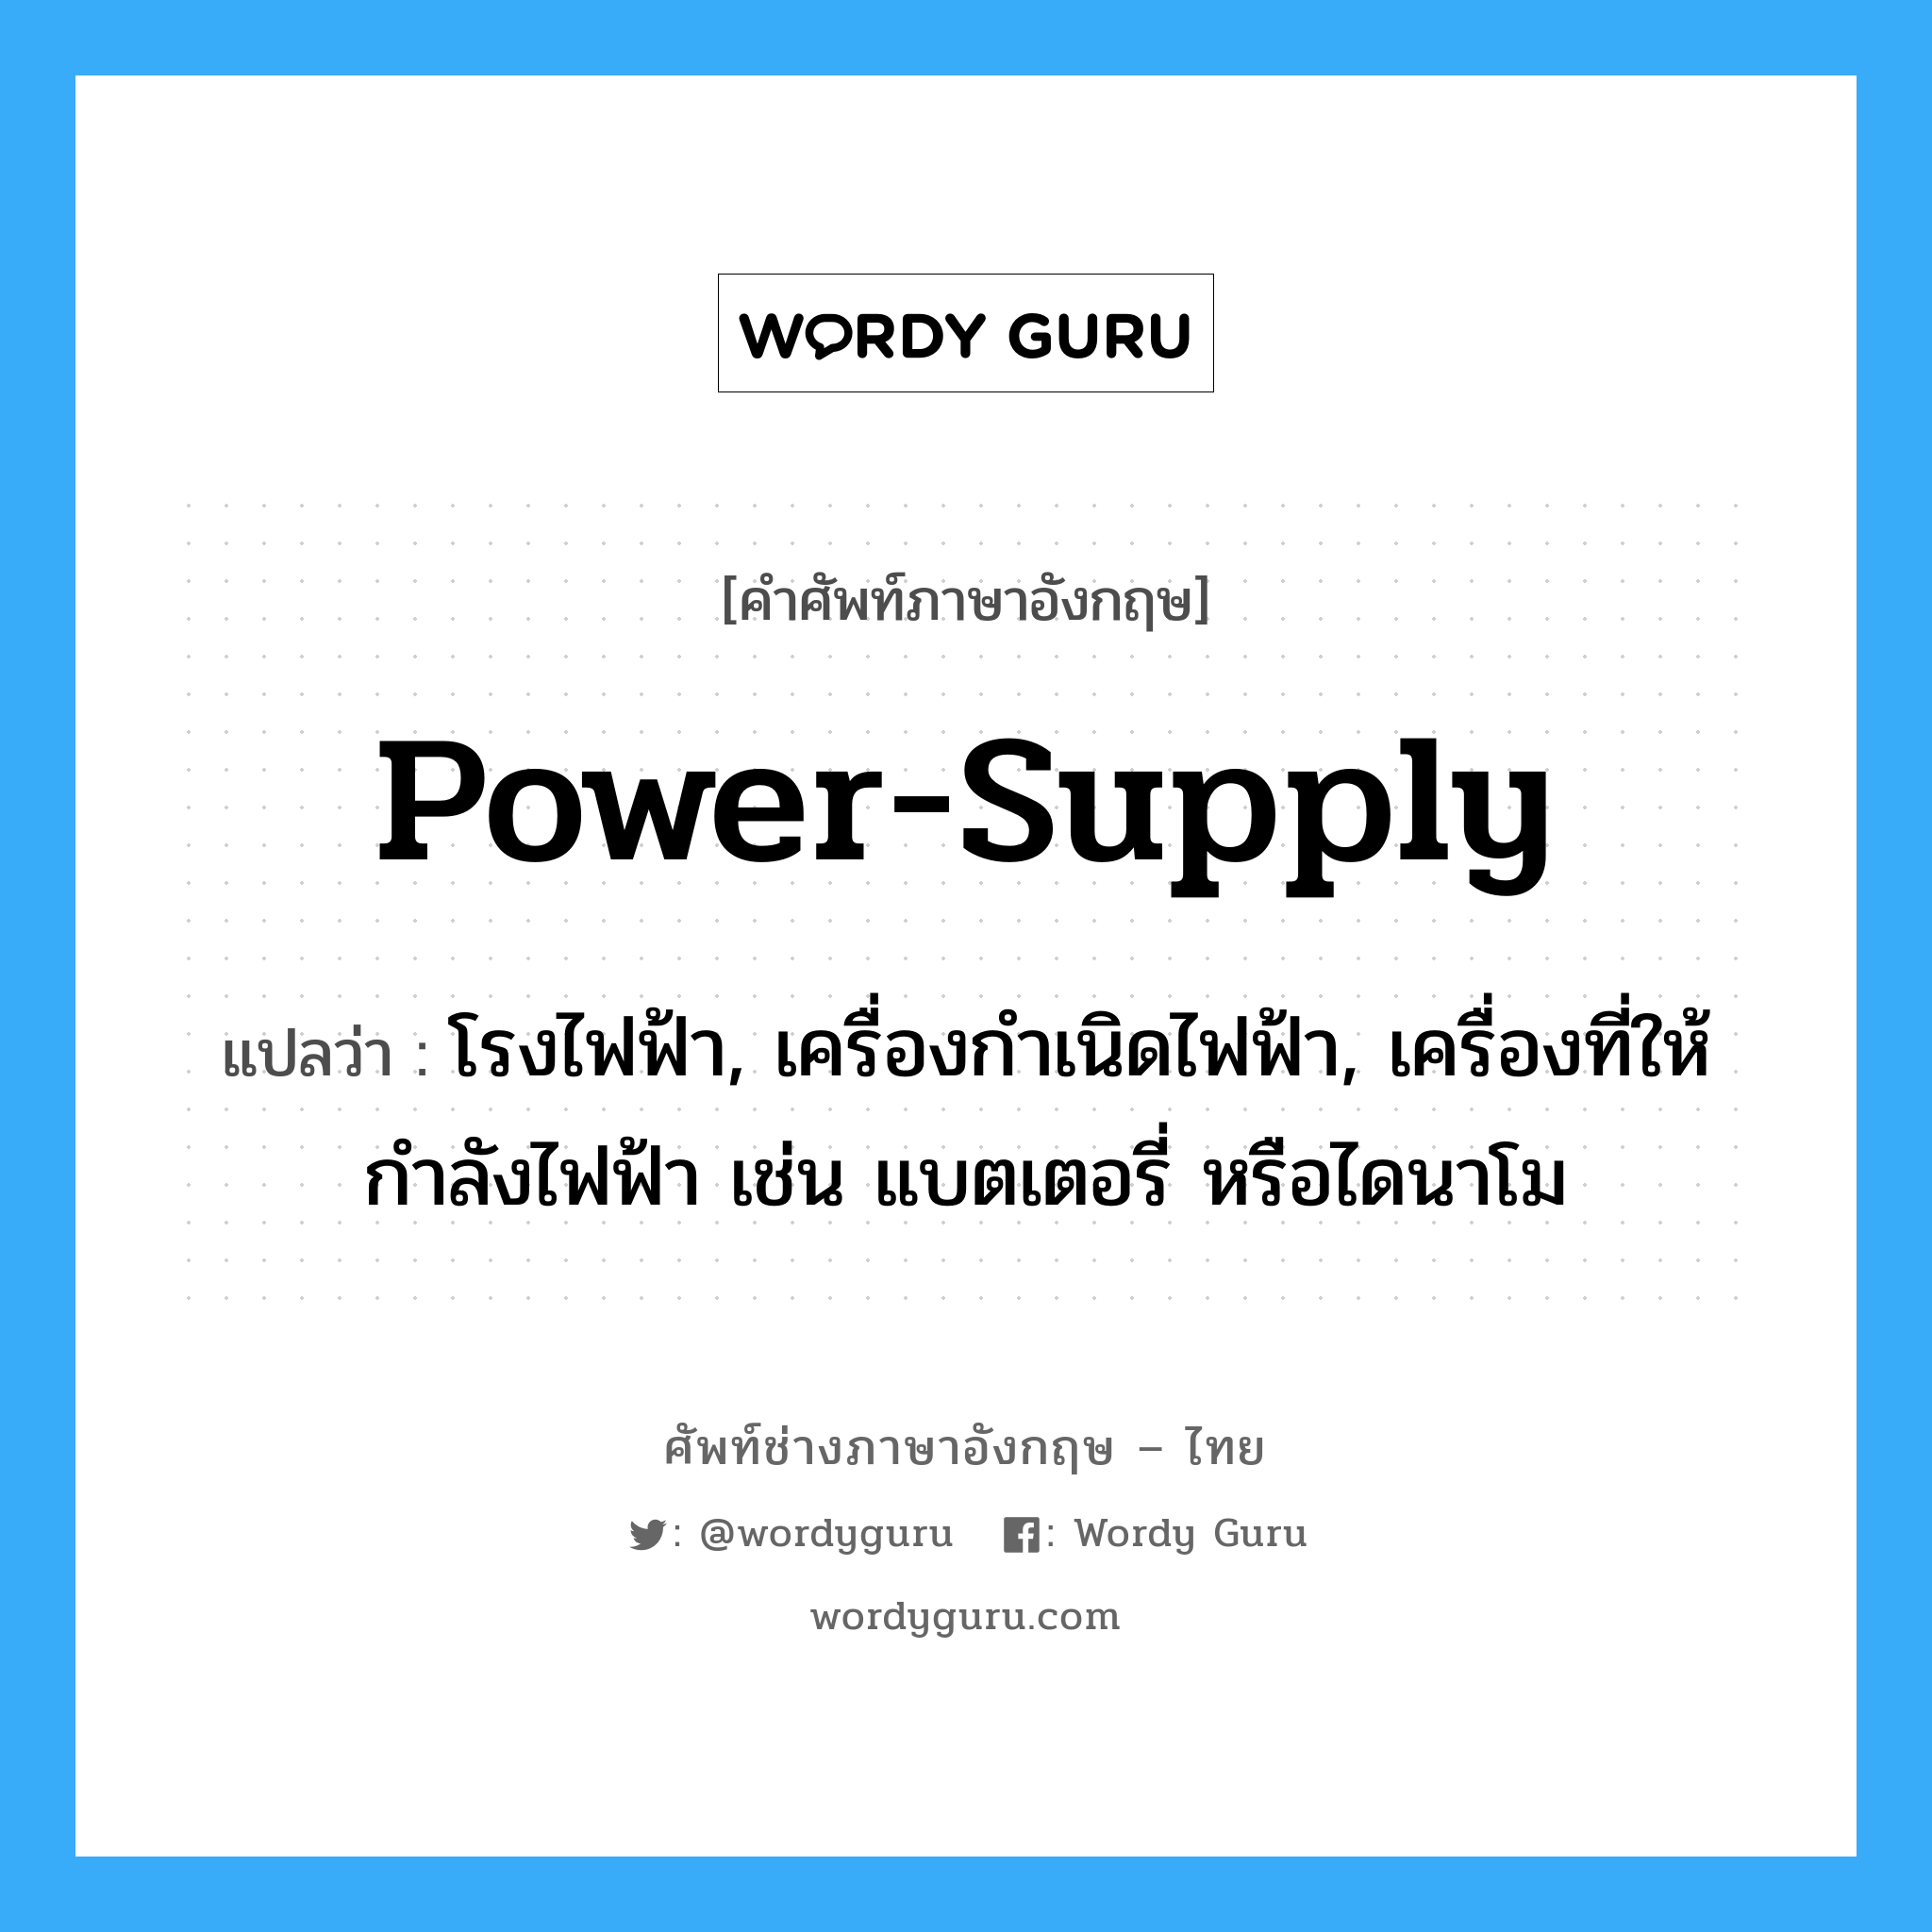 power-supply แปลว่า?, คำศัพท์ช่างภาษาอังกฤษ - ไทย power-supply คำศัพท์ภาษาอังกฤษ power-supply แปลว่า โรงไฟฟ้า, เครื่องกำเนิดไฟฟ้า, เครื่องที่ให้กำลังไฟฟ้า เช่น แบตเตอรี่ หรือไดนาโม